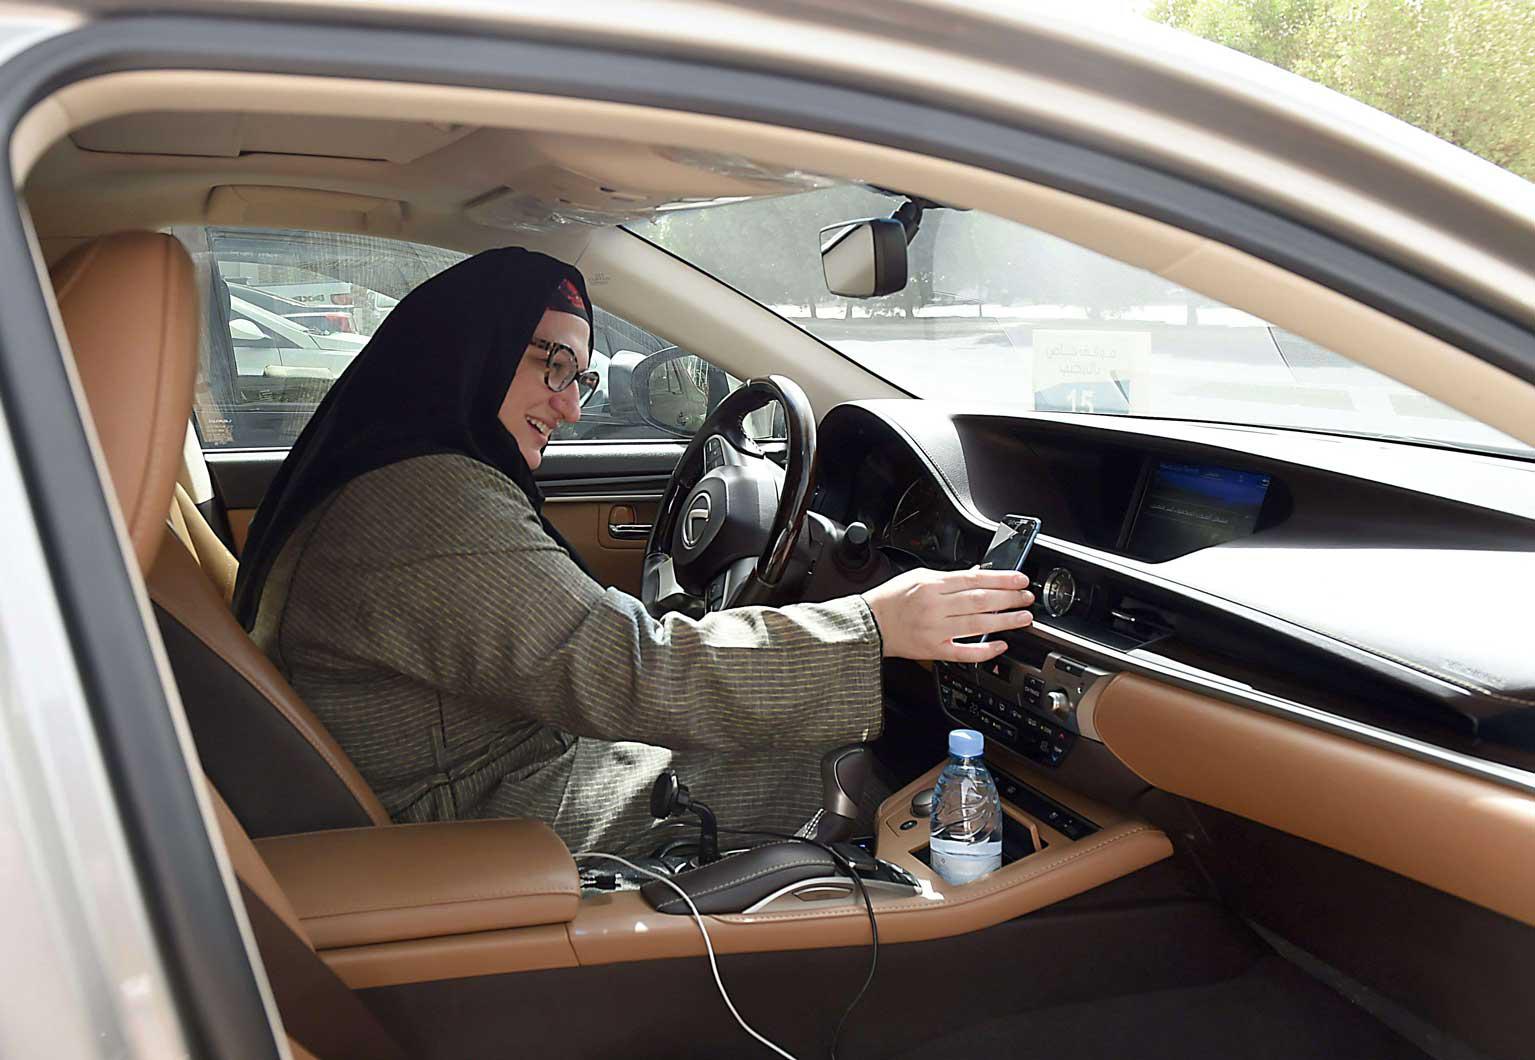 ريم الفرات السعودية الجنسية هي موظفة في شركة "كريم"  تستعد لتلبية طلب زابون باستخدام سيارتها في العاصمة السعودية الرياض